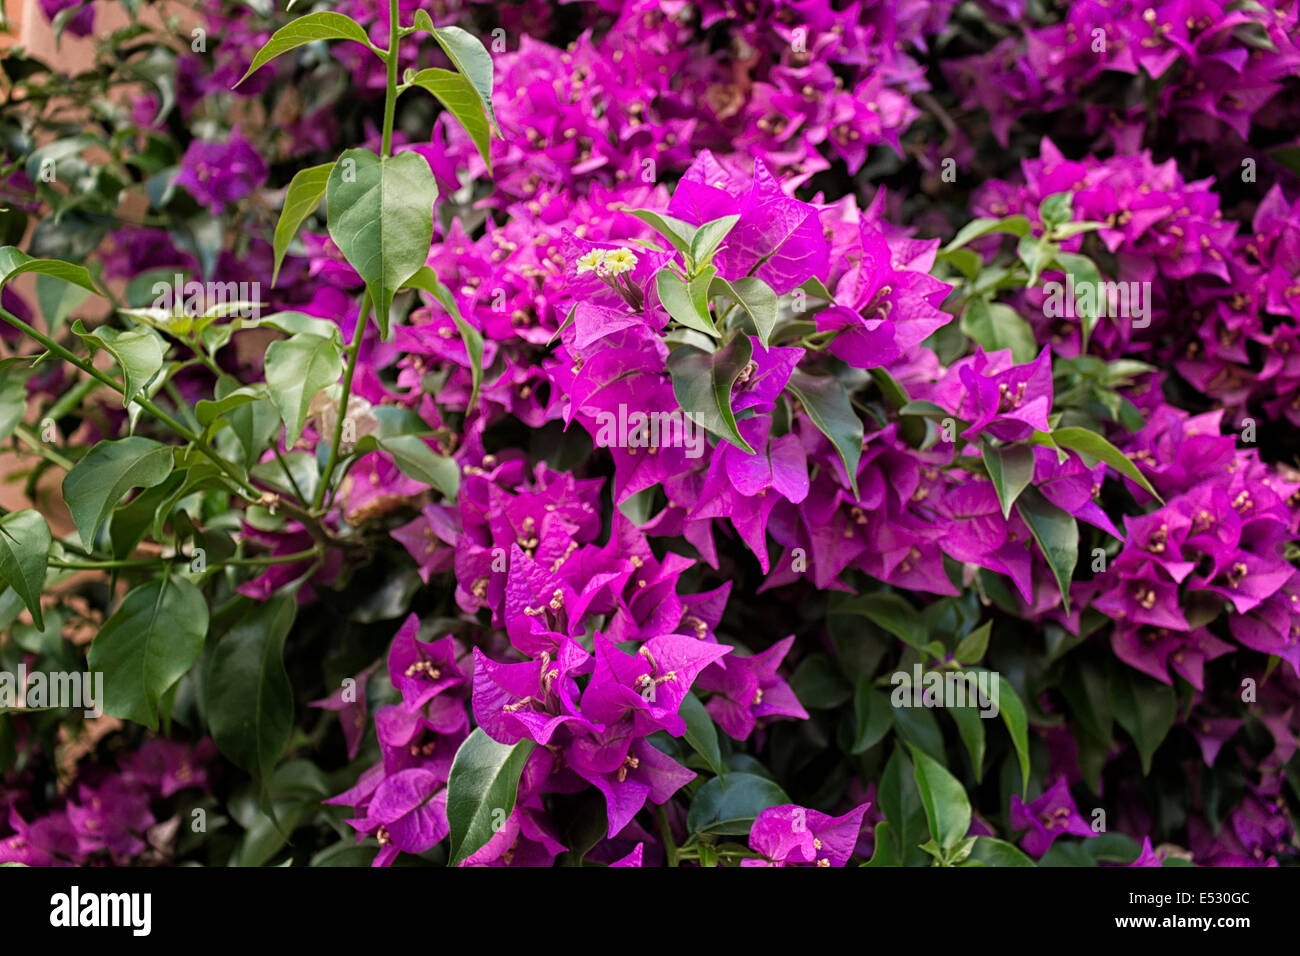 Bougainvillea glabra : feuille vert foncé, brillant et glorieux bractées florales magenta. Banque D'Images